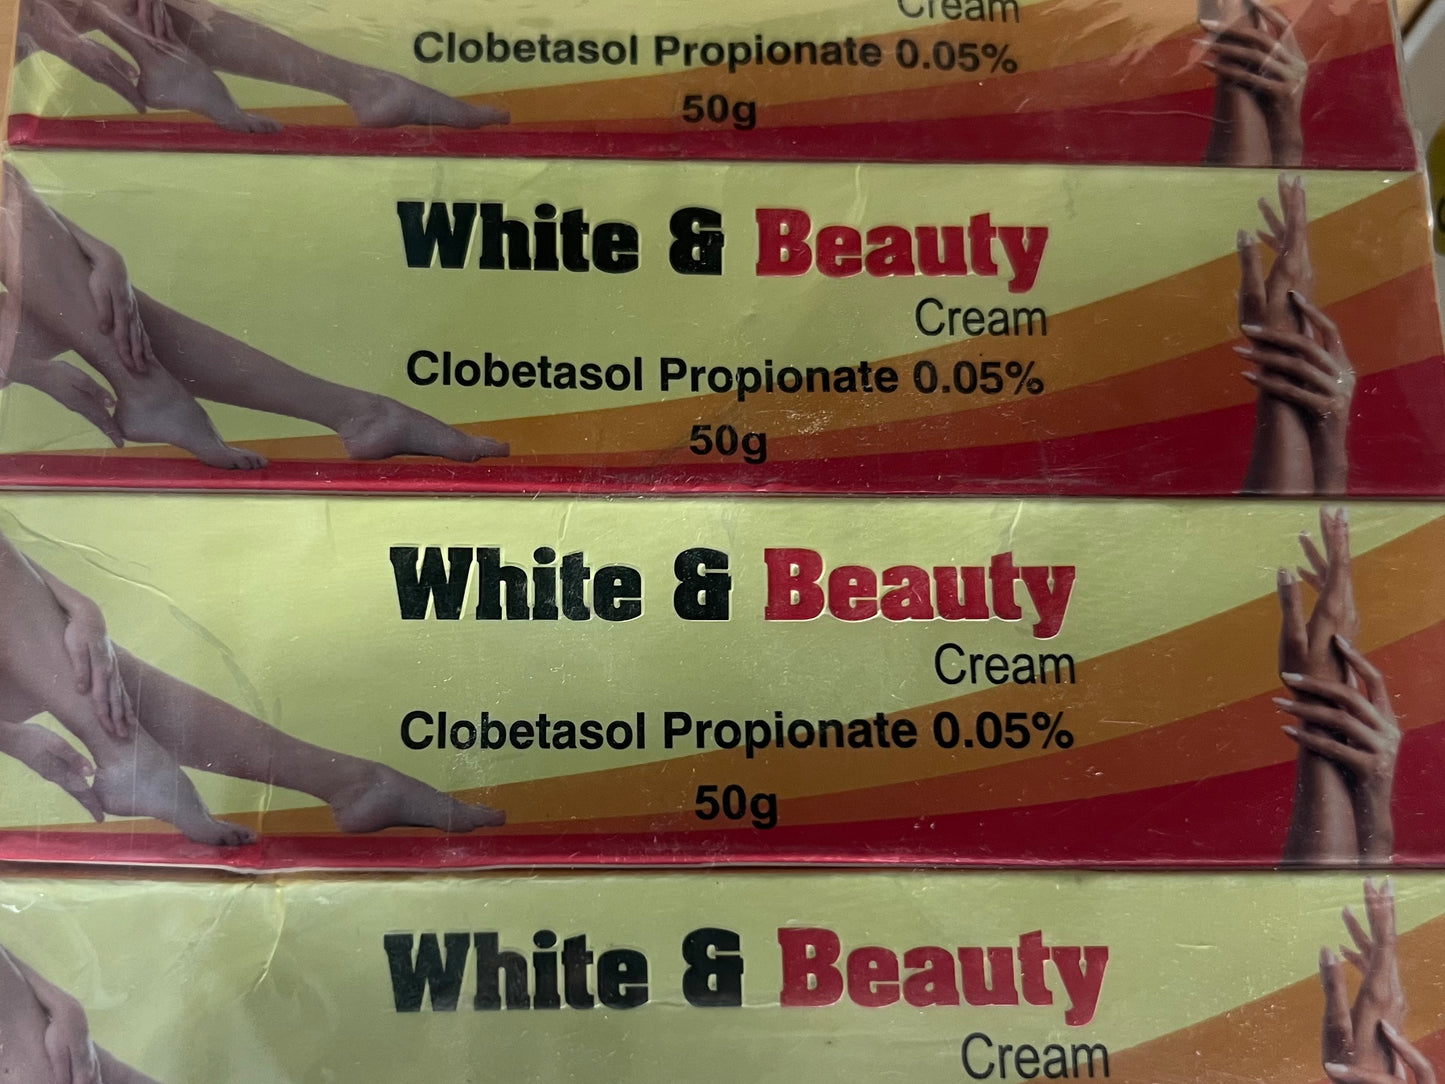 White & Beauty Cream